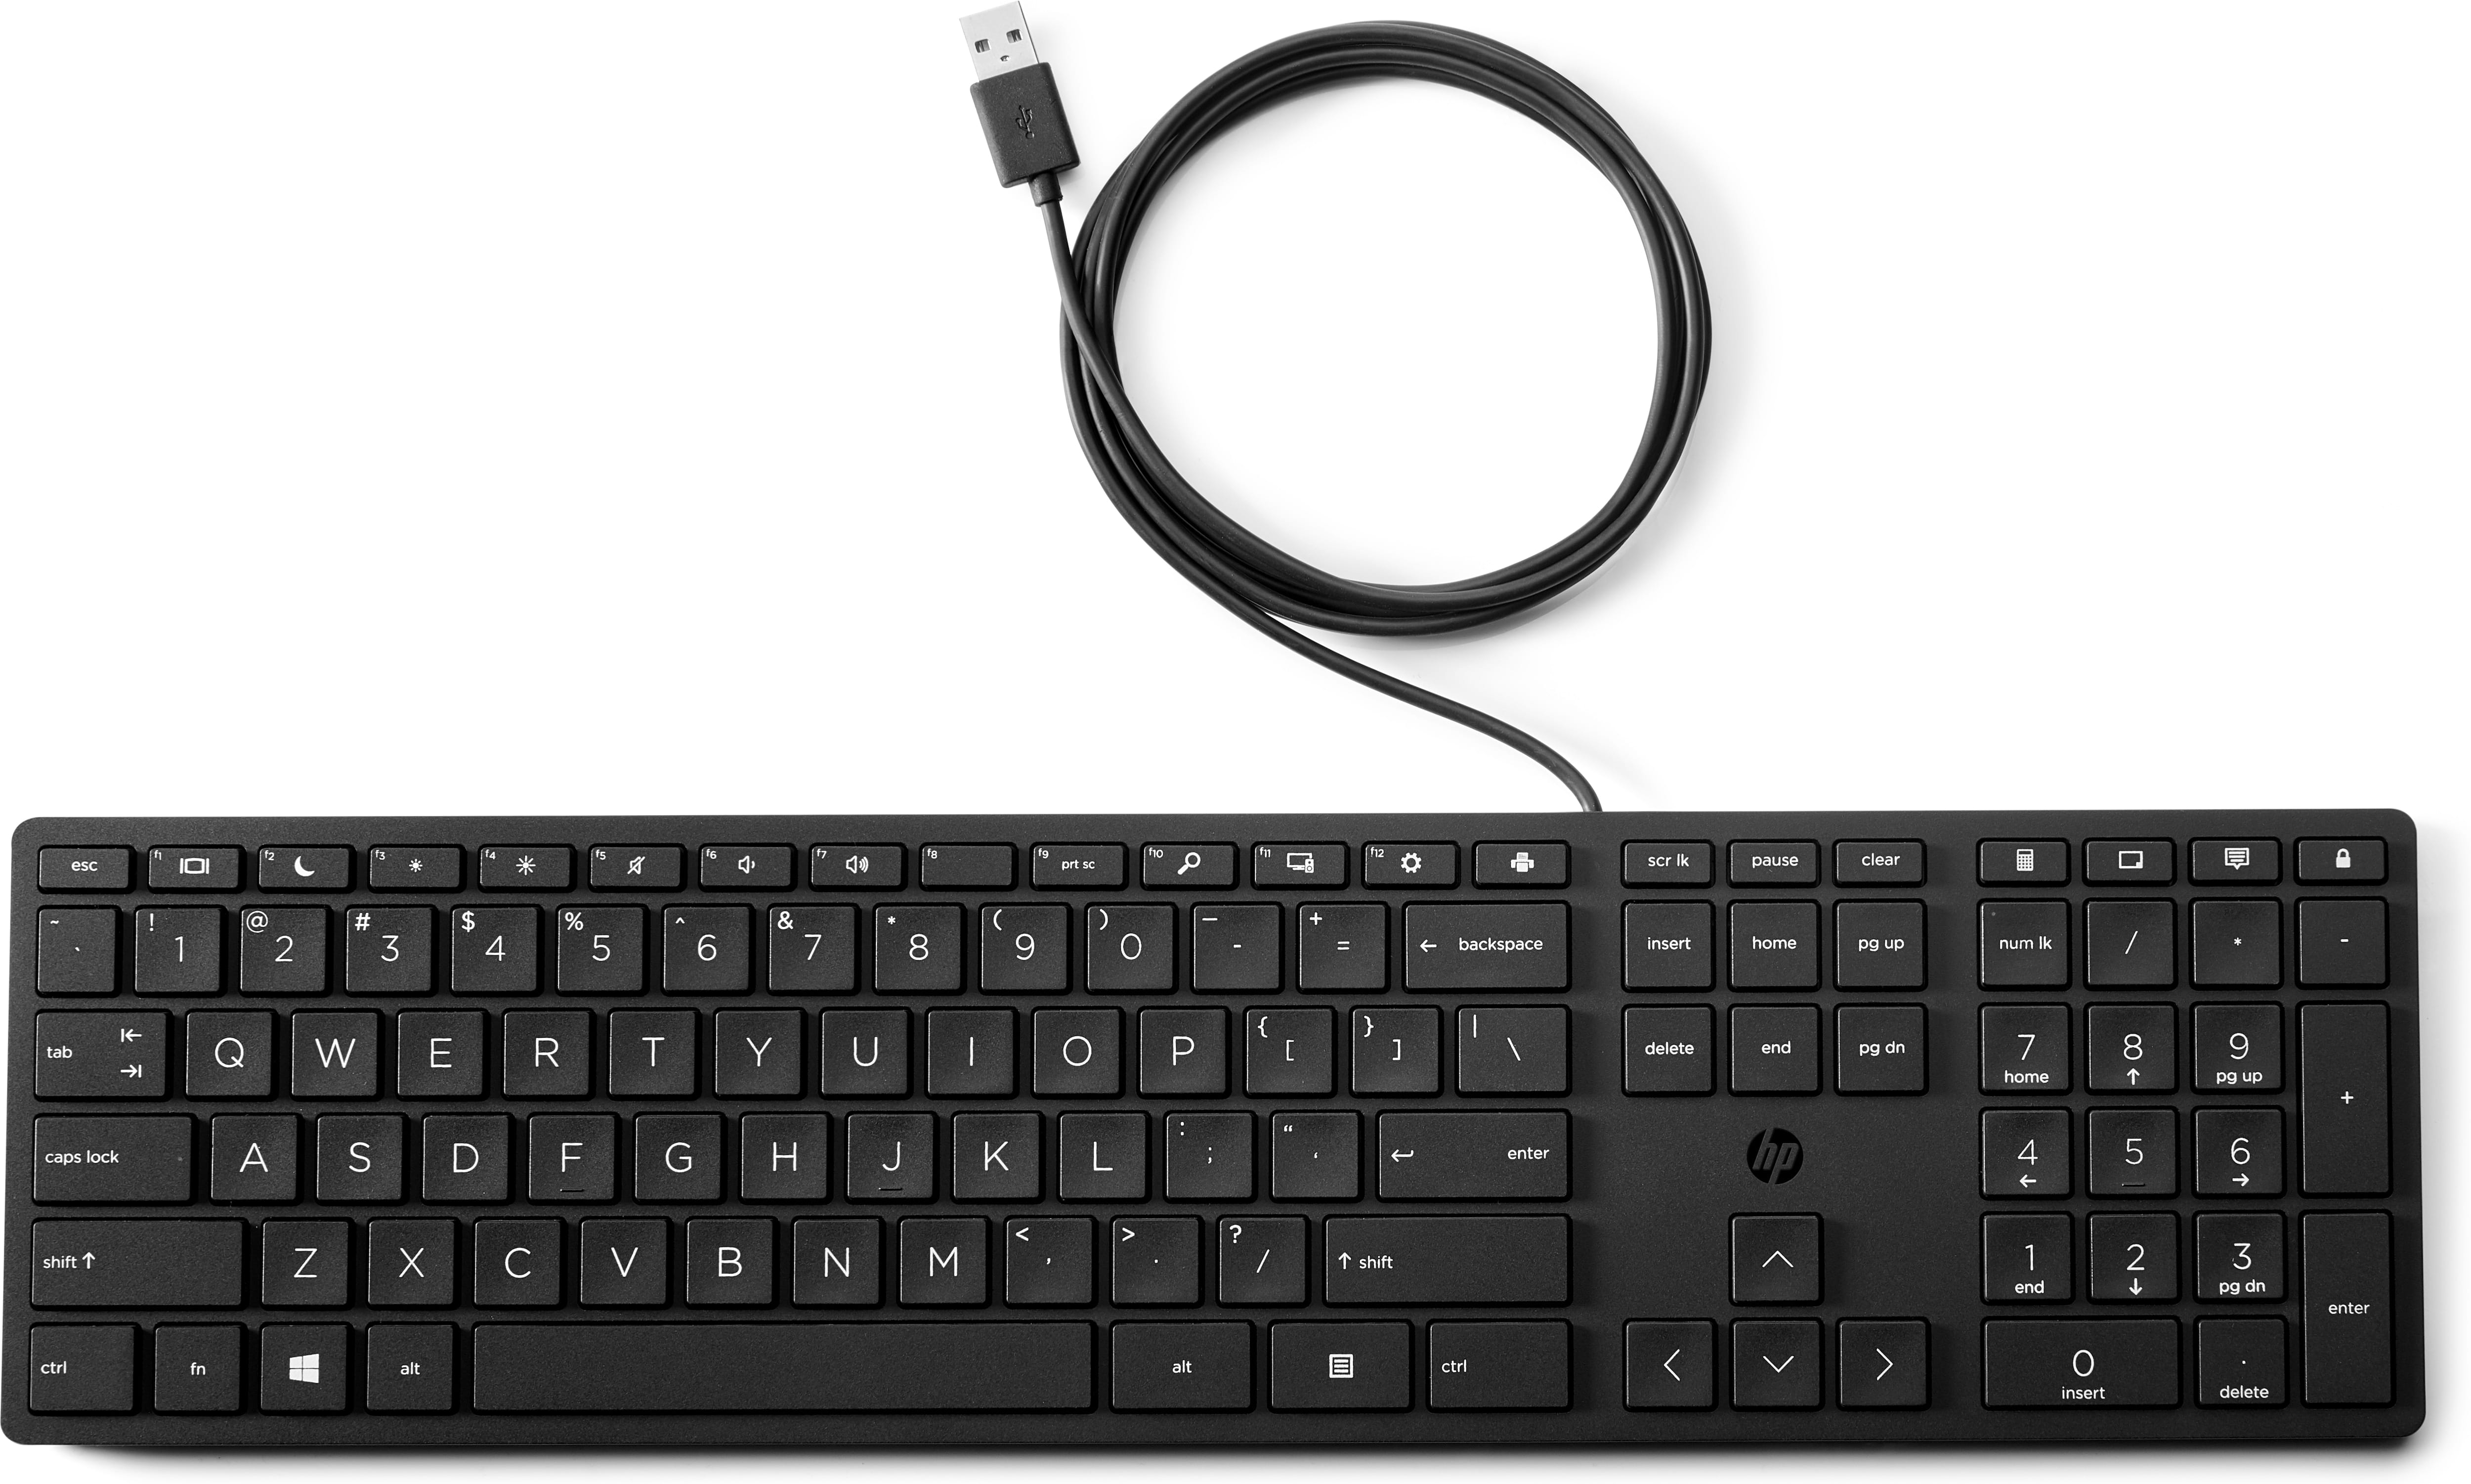 HP Desktop 320K - Tastatur - USB - QWERTY - Englisch (Packung mit 12)